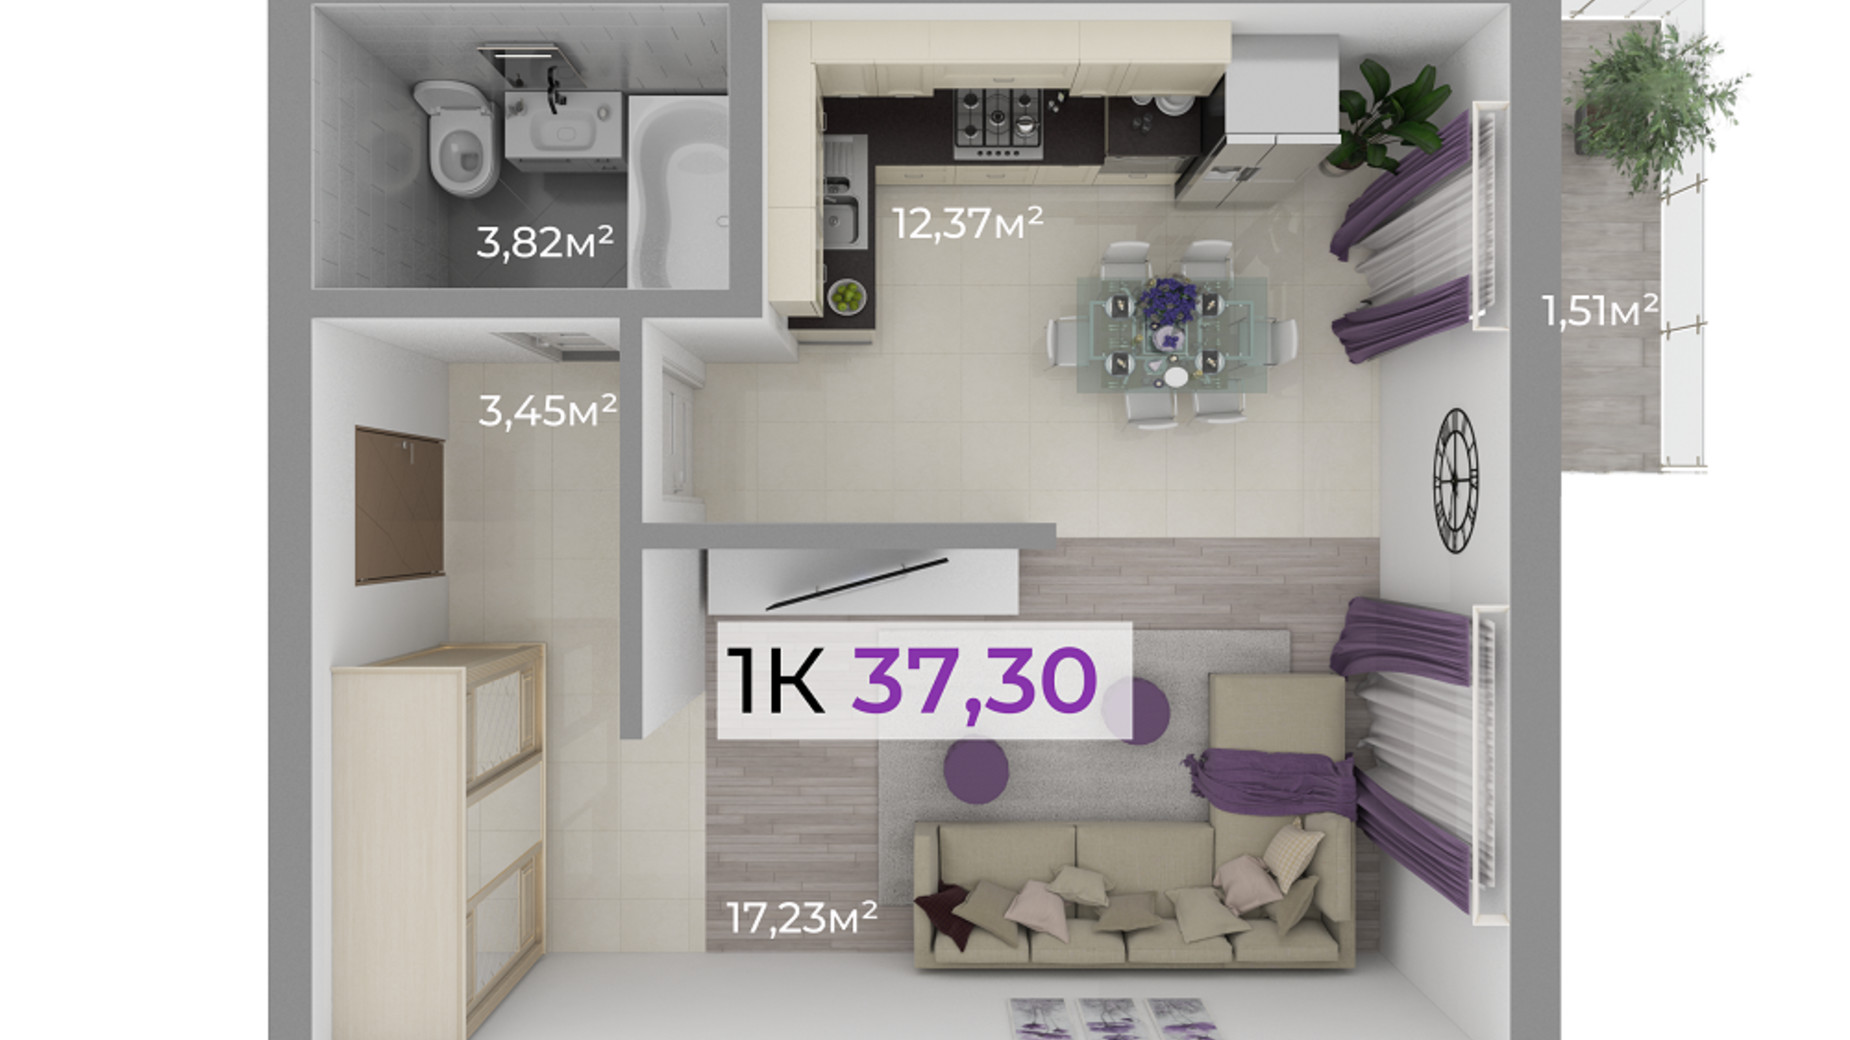 Планування 1-кімнатної квартири в ЖК Долішній 37.3 м², фото 506520